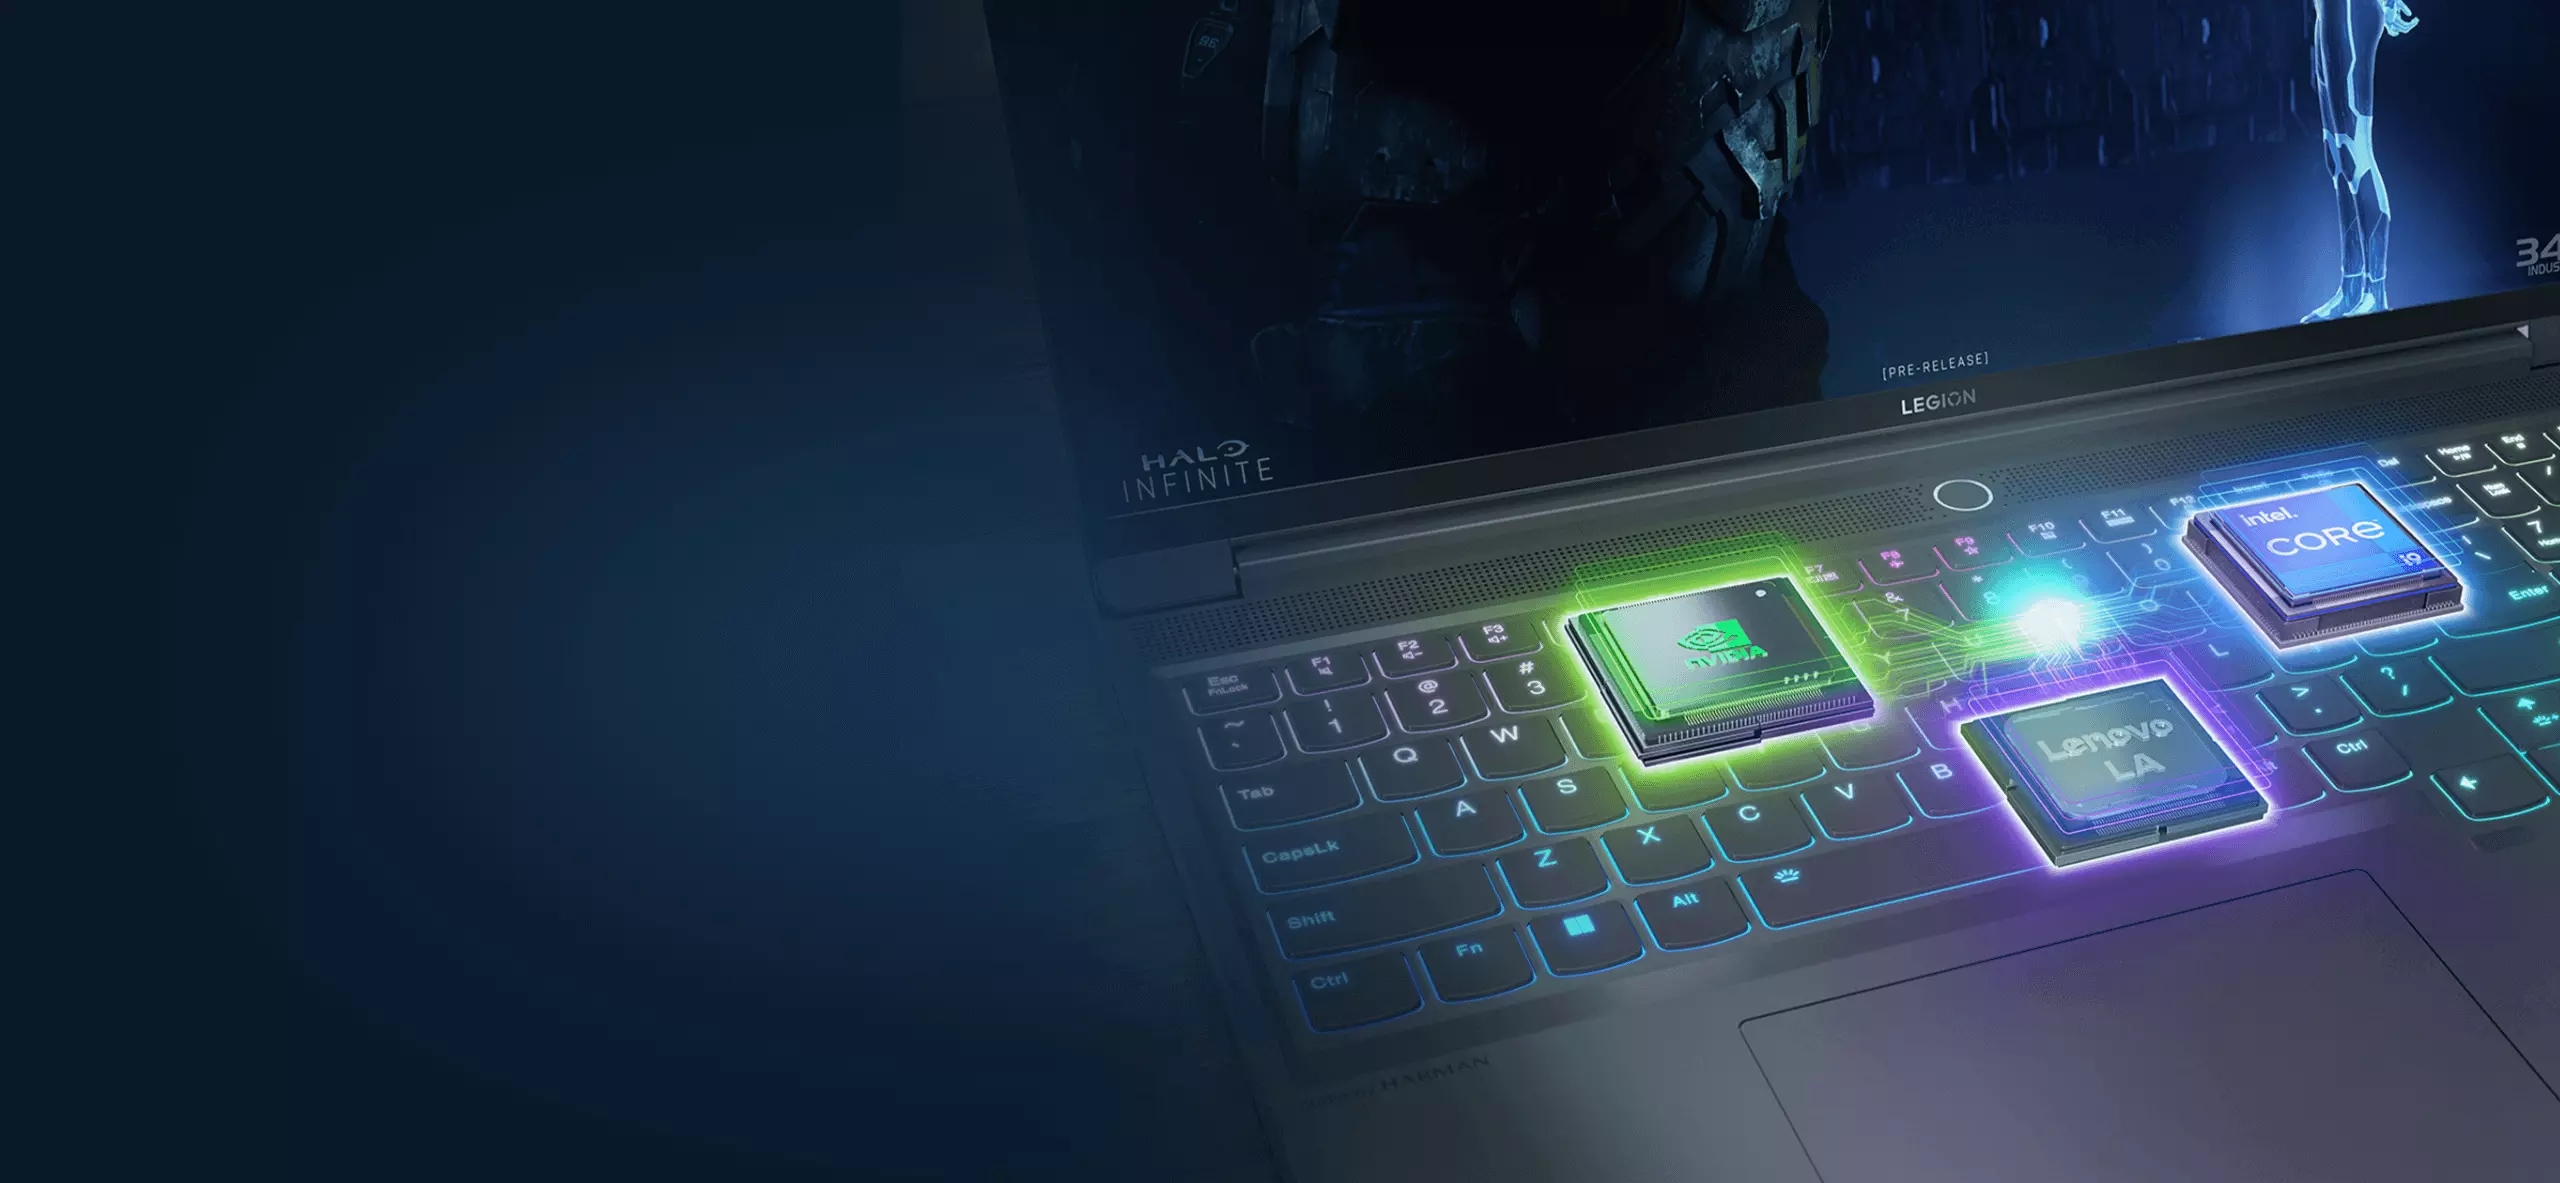 Sağa bakan Lenovo Slim 7'nin yakın çekimi, çok renkli arkadan aydınlatmalı klavyeyi ve ekranı gösteriyor.